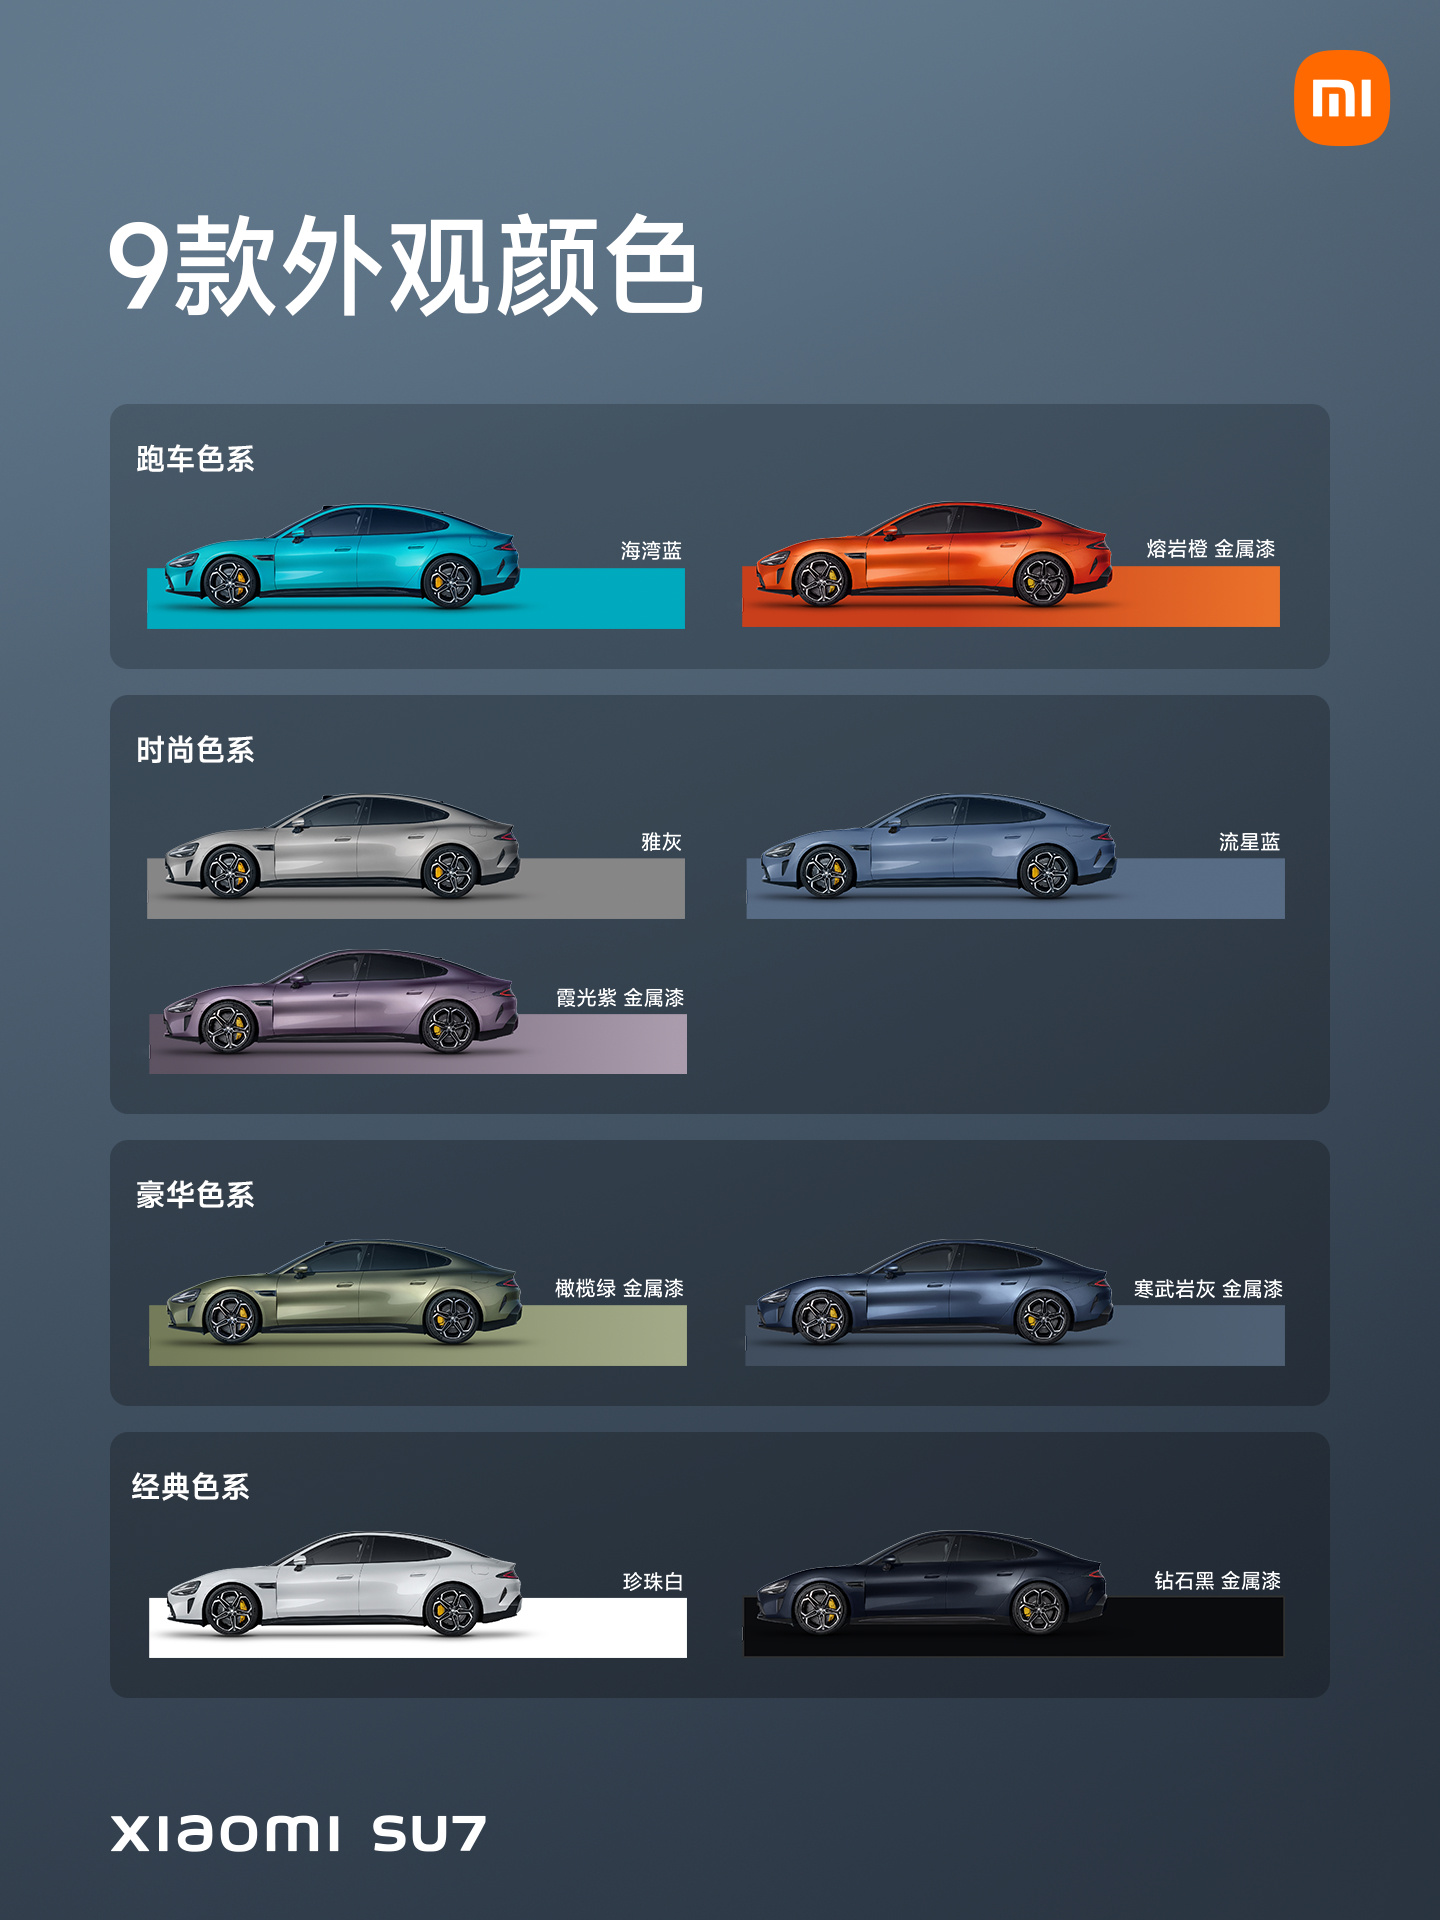 消息称小米汽车 SU7 将于下半年推出更多配色